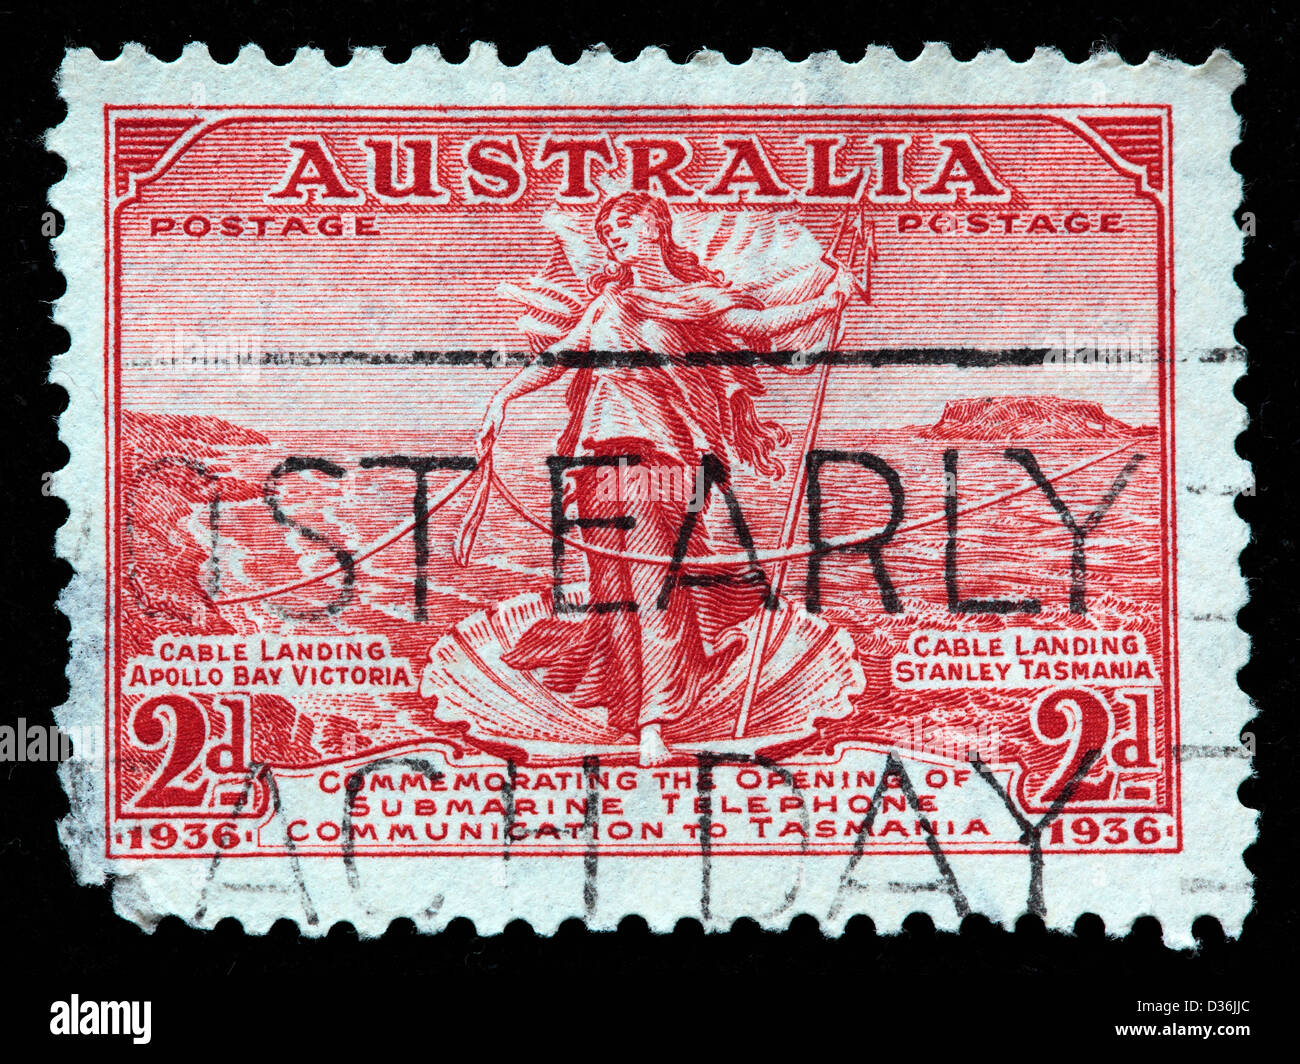 Australia Tasmania enlace telefónico, sello, Australia, 1936 Foto de stock